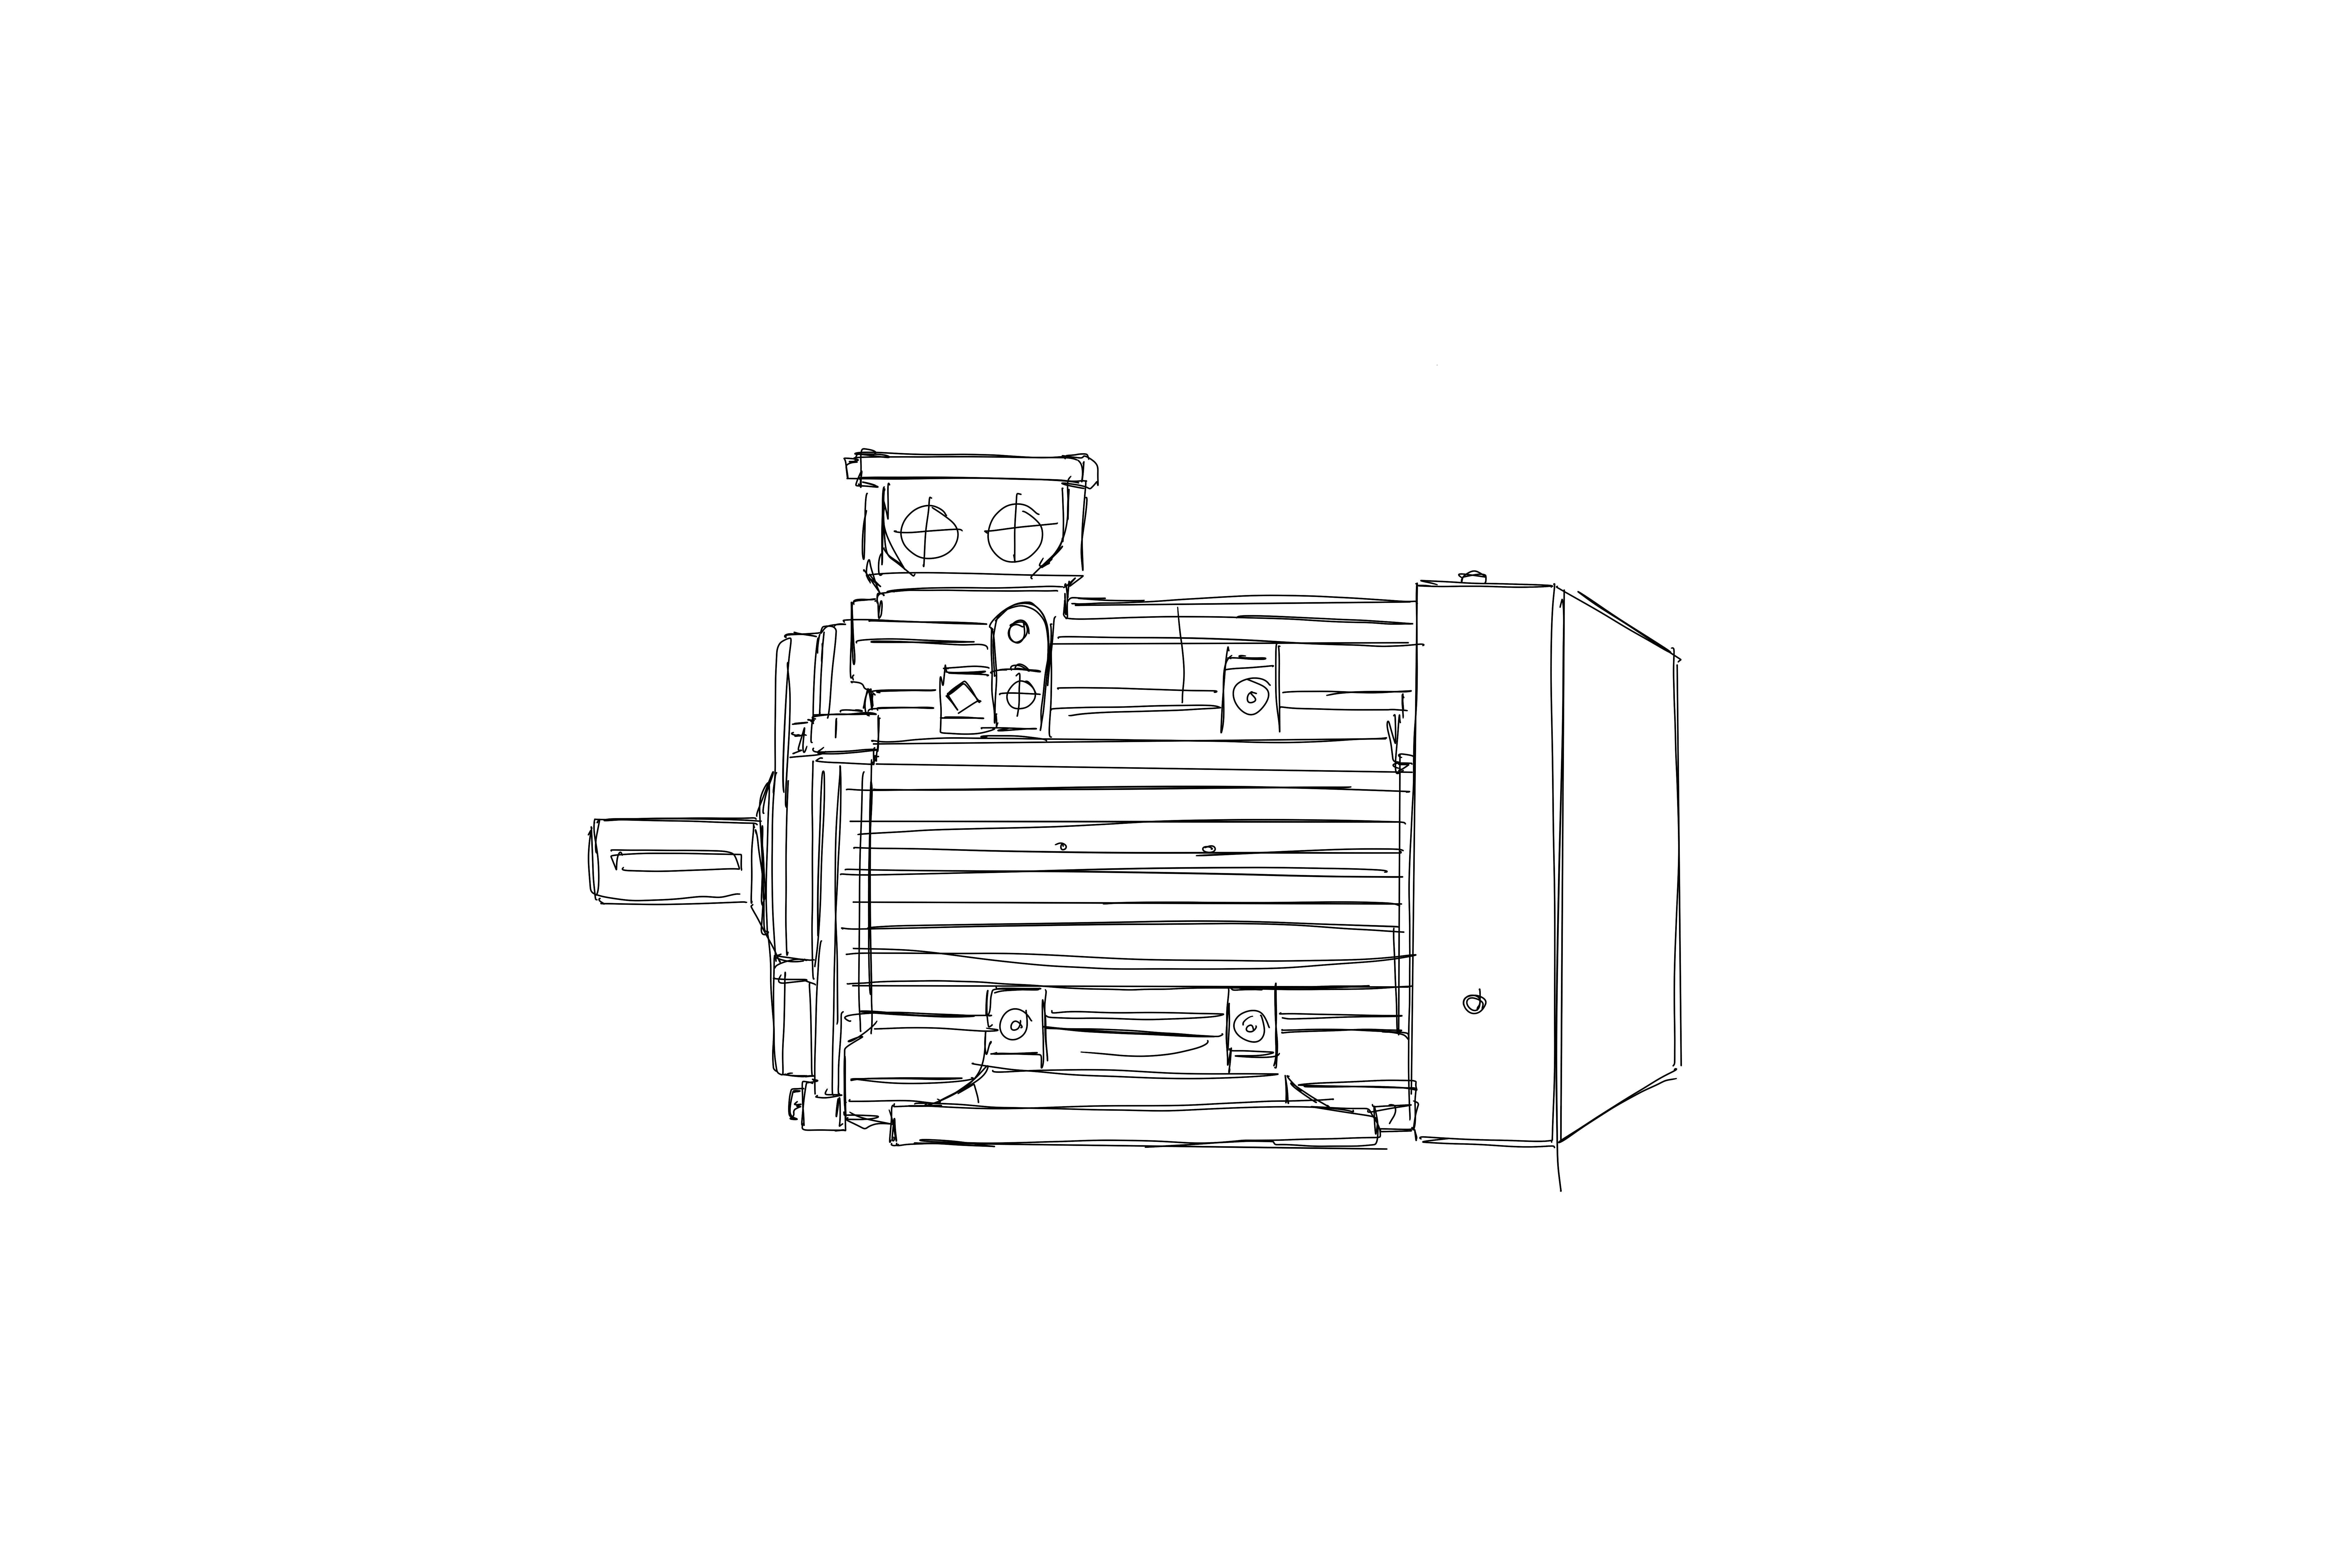 Einphasen-Wechselstrommotor ABS 56 A 2